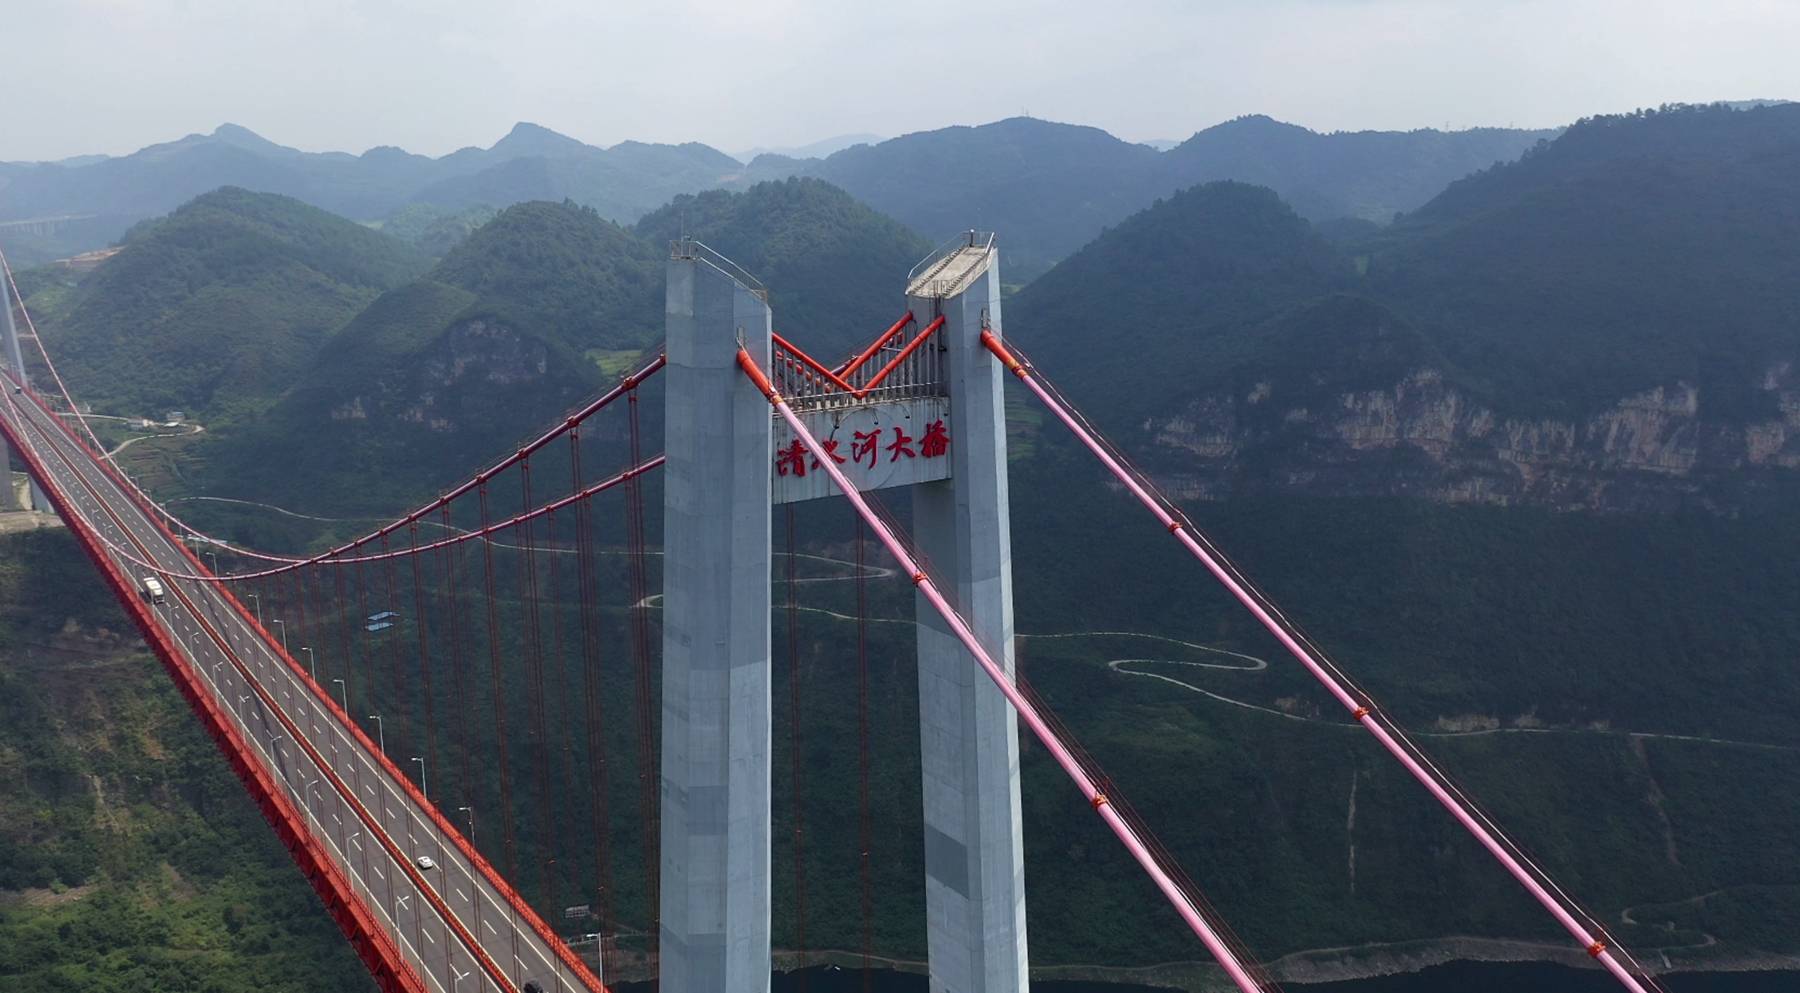 牛!贵州第一大桥清水河特大桥,总投资15亿元,壮美如云端天路